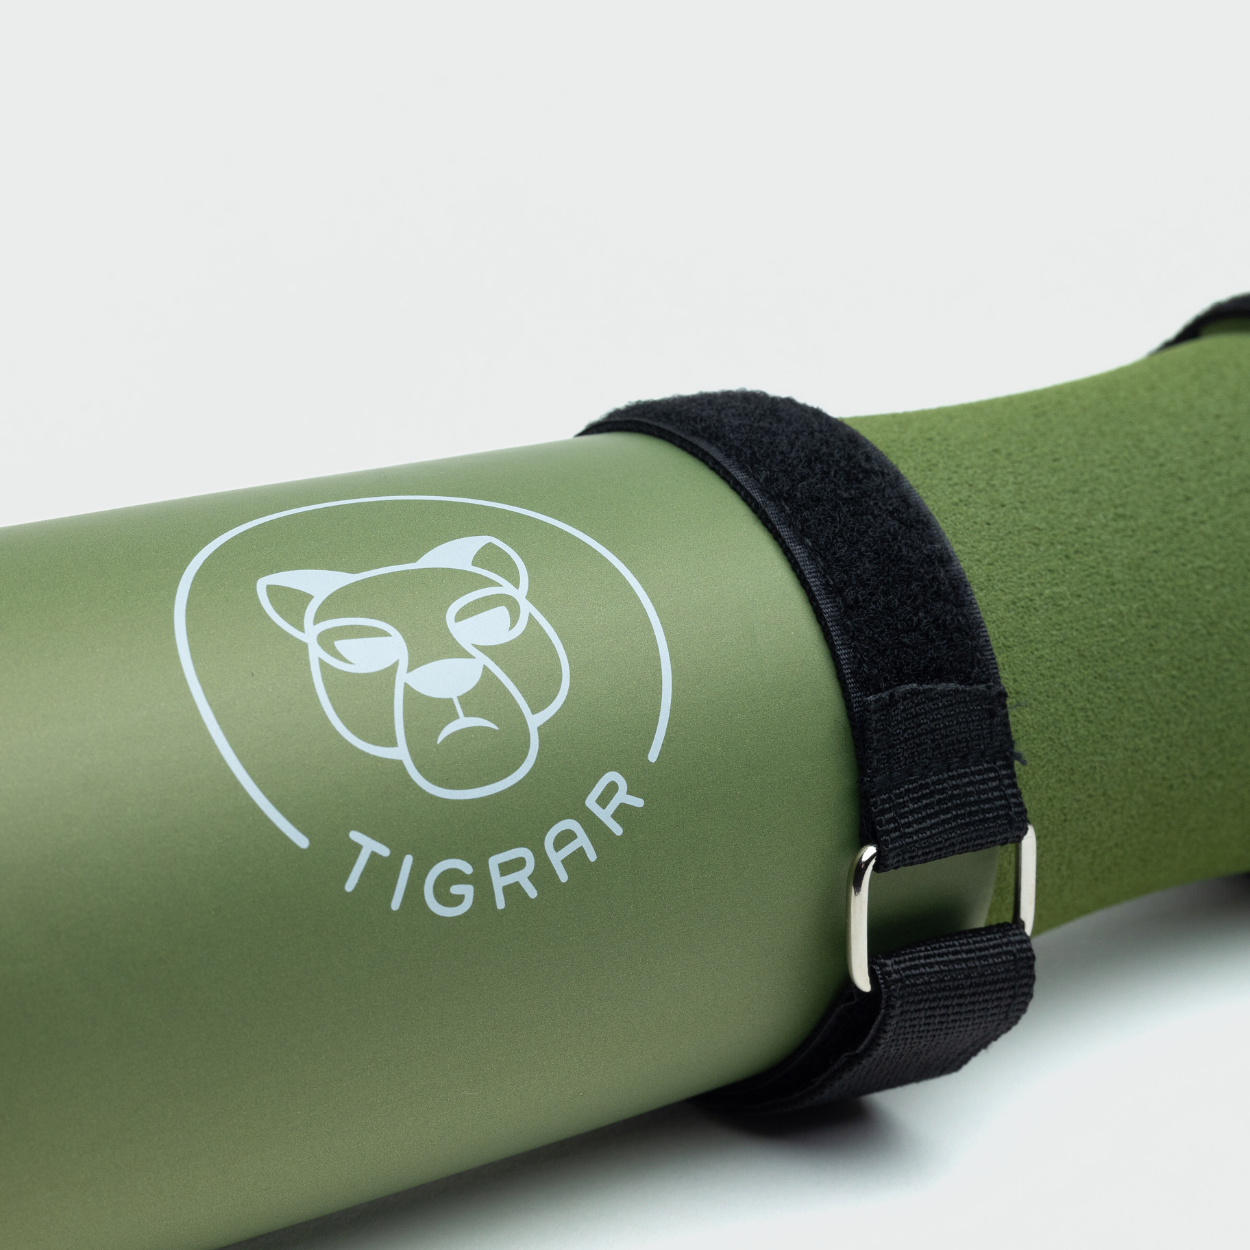 Groen Tigrar barbell squat pad detail, combineert comfort met stijl in de gym.